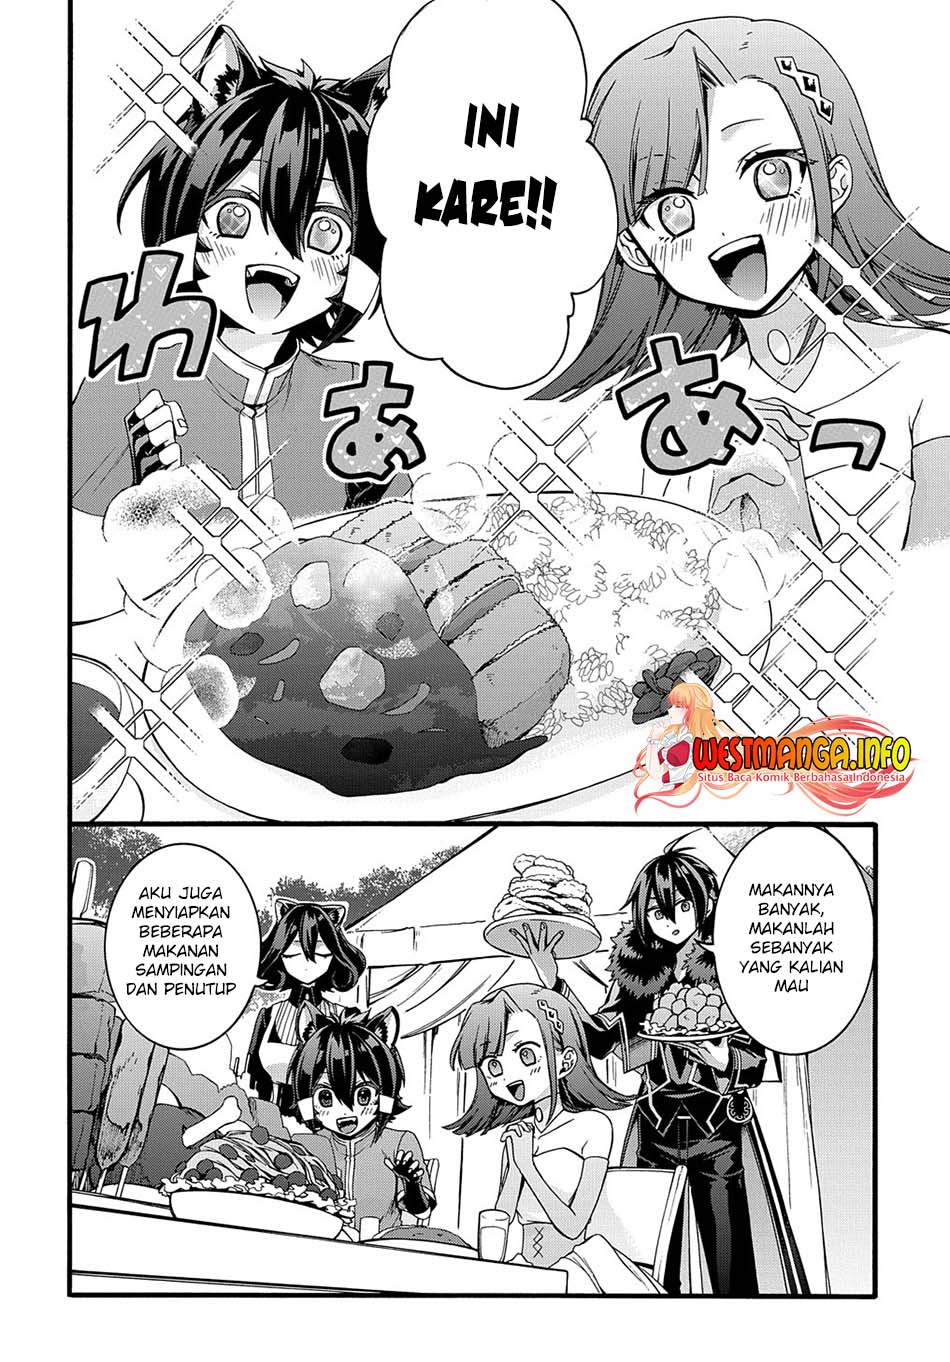 Garbage Brave: Isekai ni Shoukan Sare Suterareta Yuusha no Fukushuu Monogatari Chapter 21